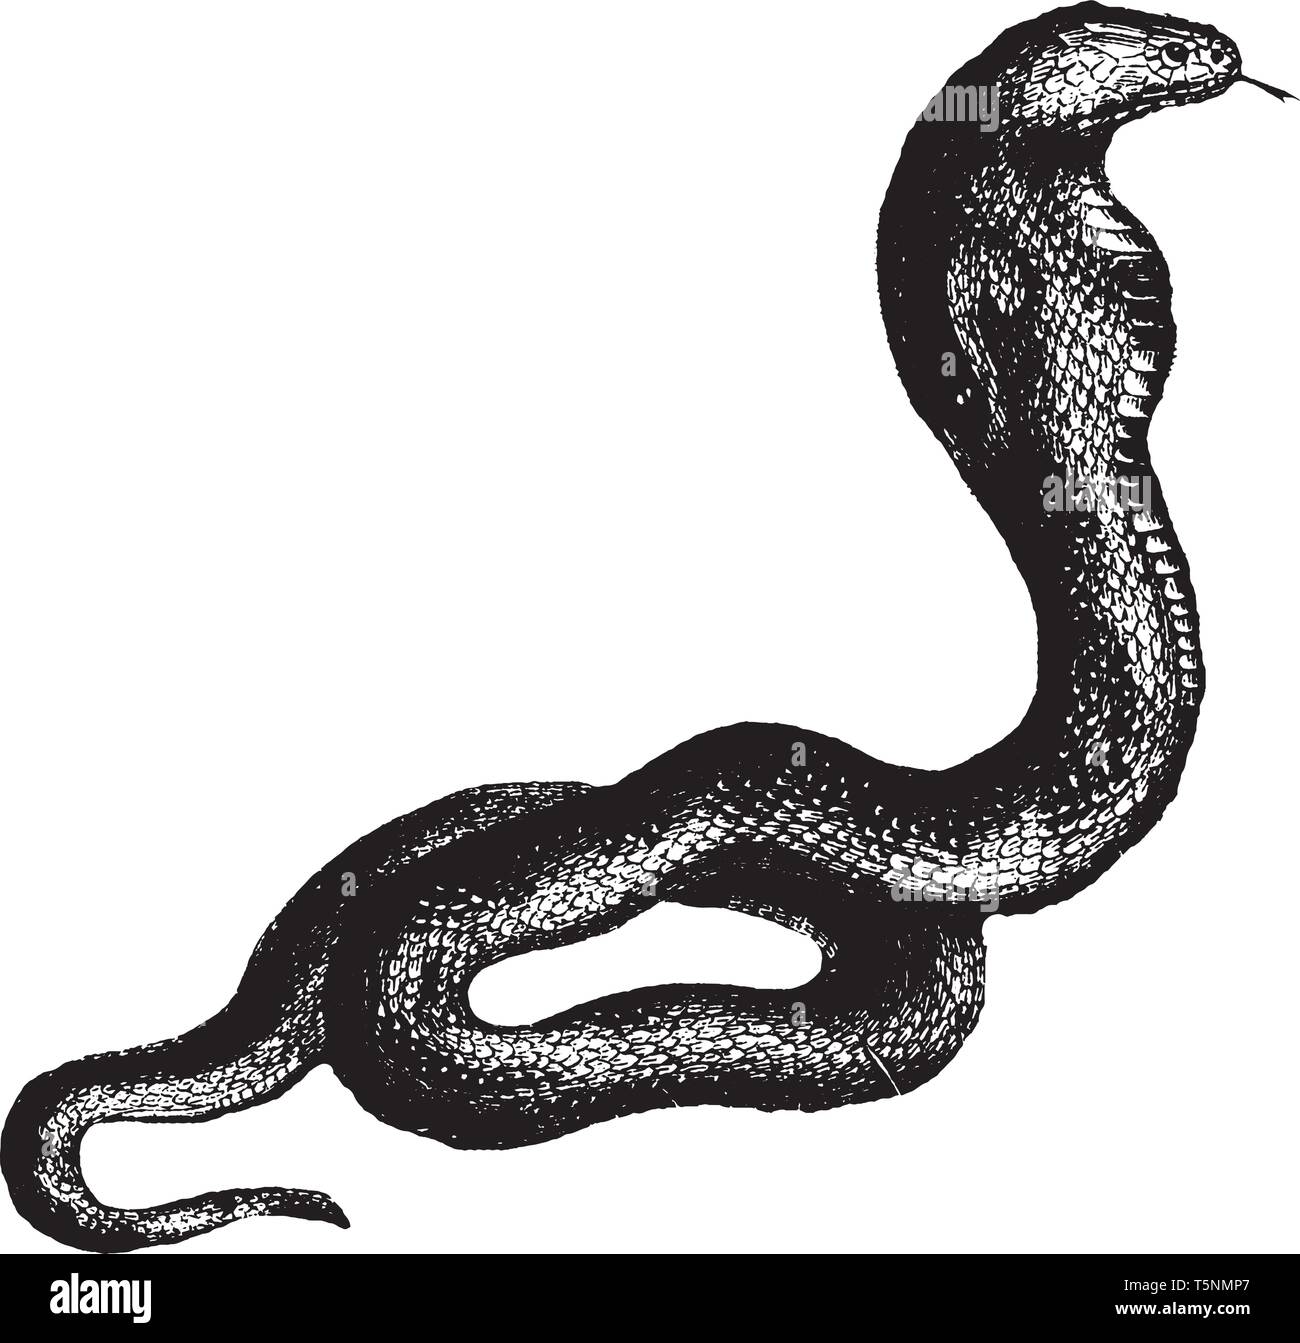 Cobra es una especie de serpientes venenosas de la familia Elapidae, grabado o dibujo de línea vintage de la ilustración. Ilustración del Vector